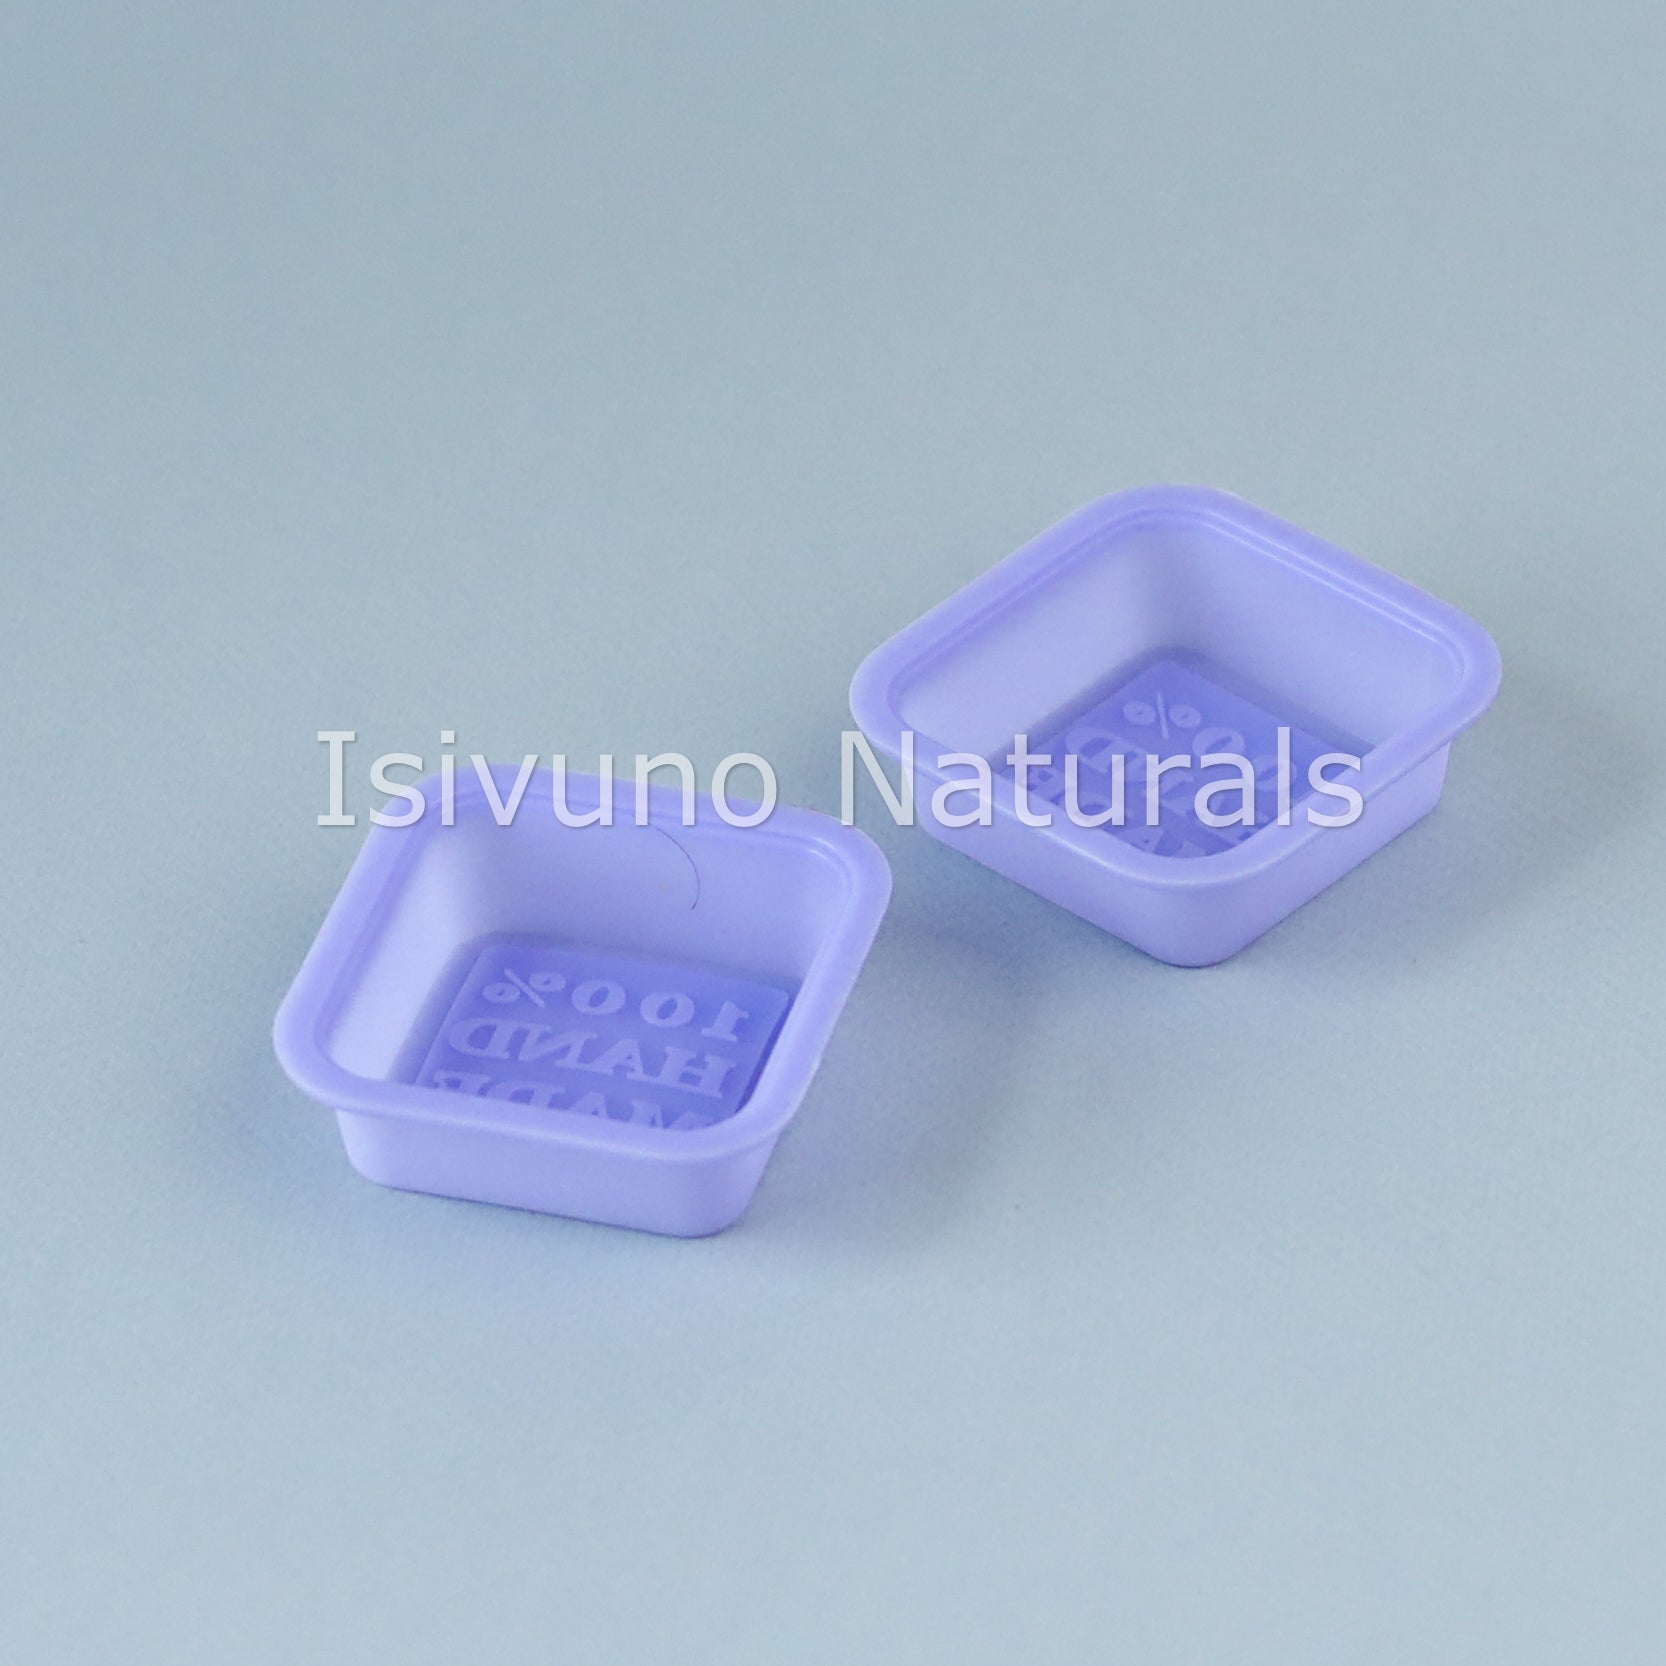 Silicone Soap Mold